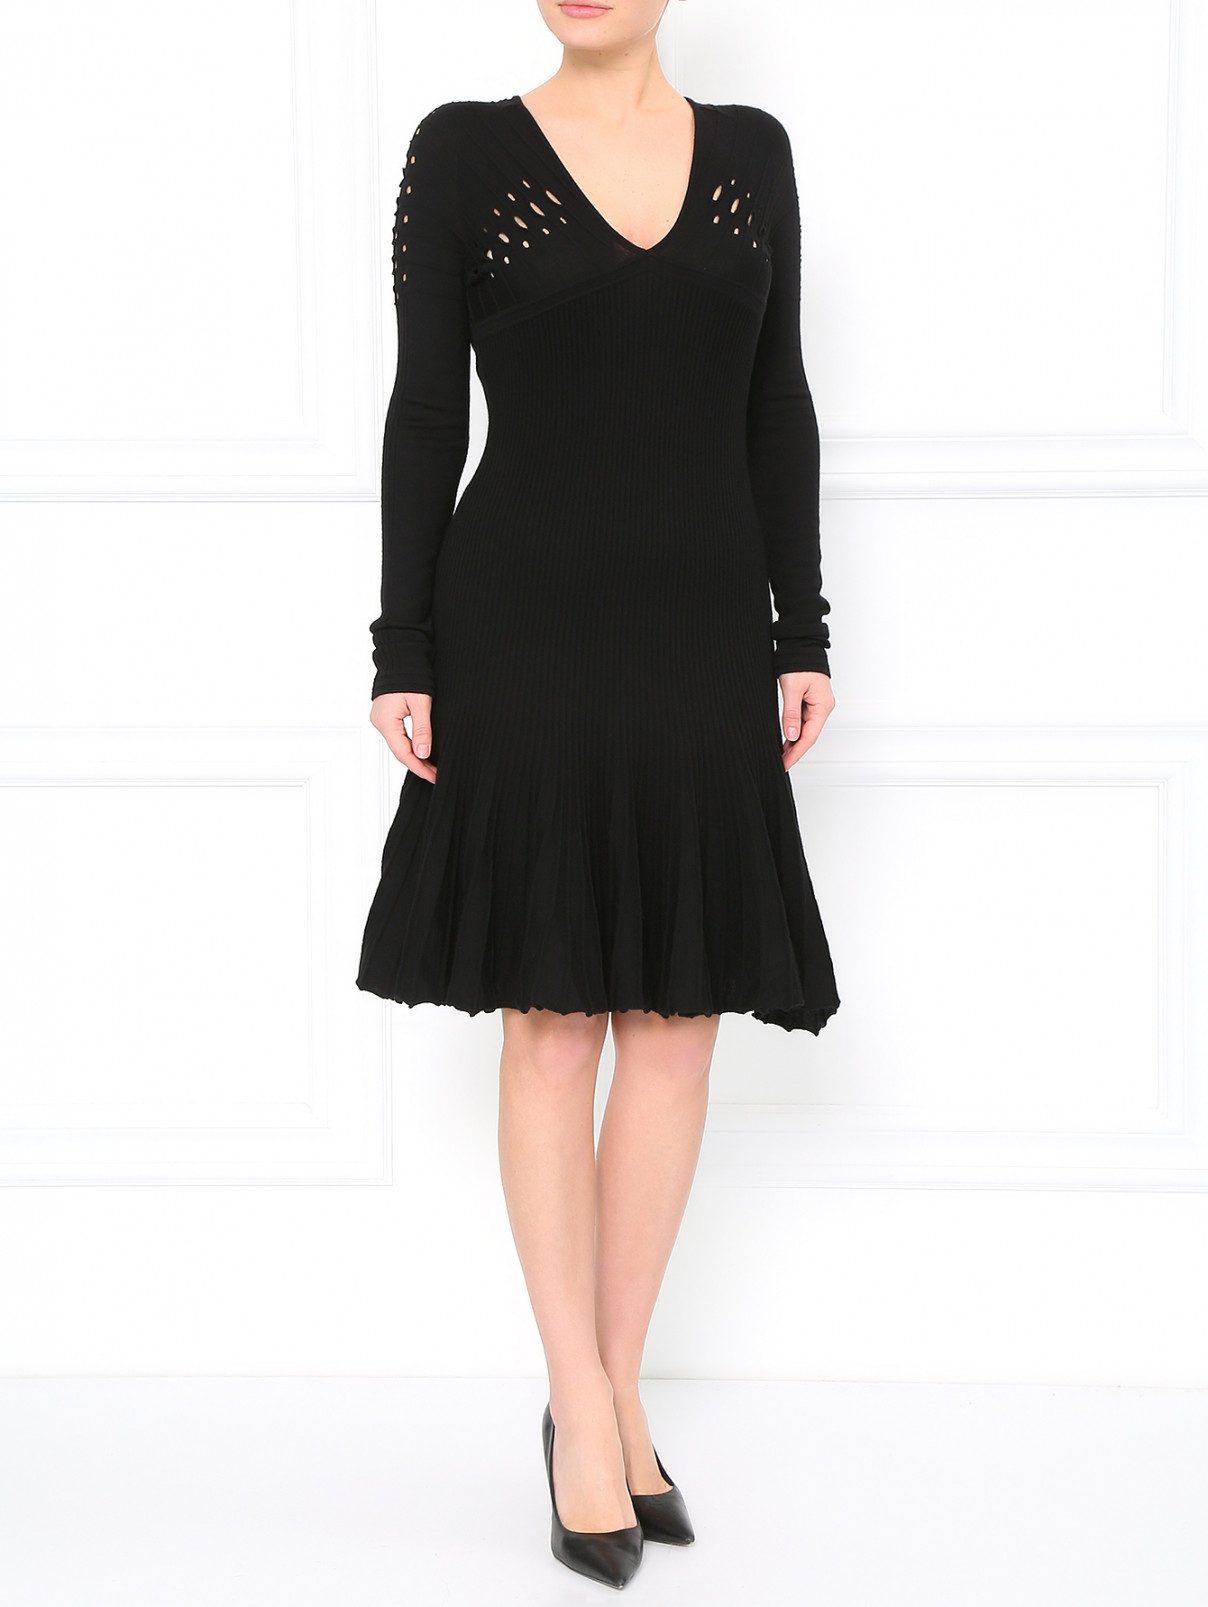 Трикотажное платье с вырезом Versace 1969  –  Модель Общий вид  – Цвет:  Черный